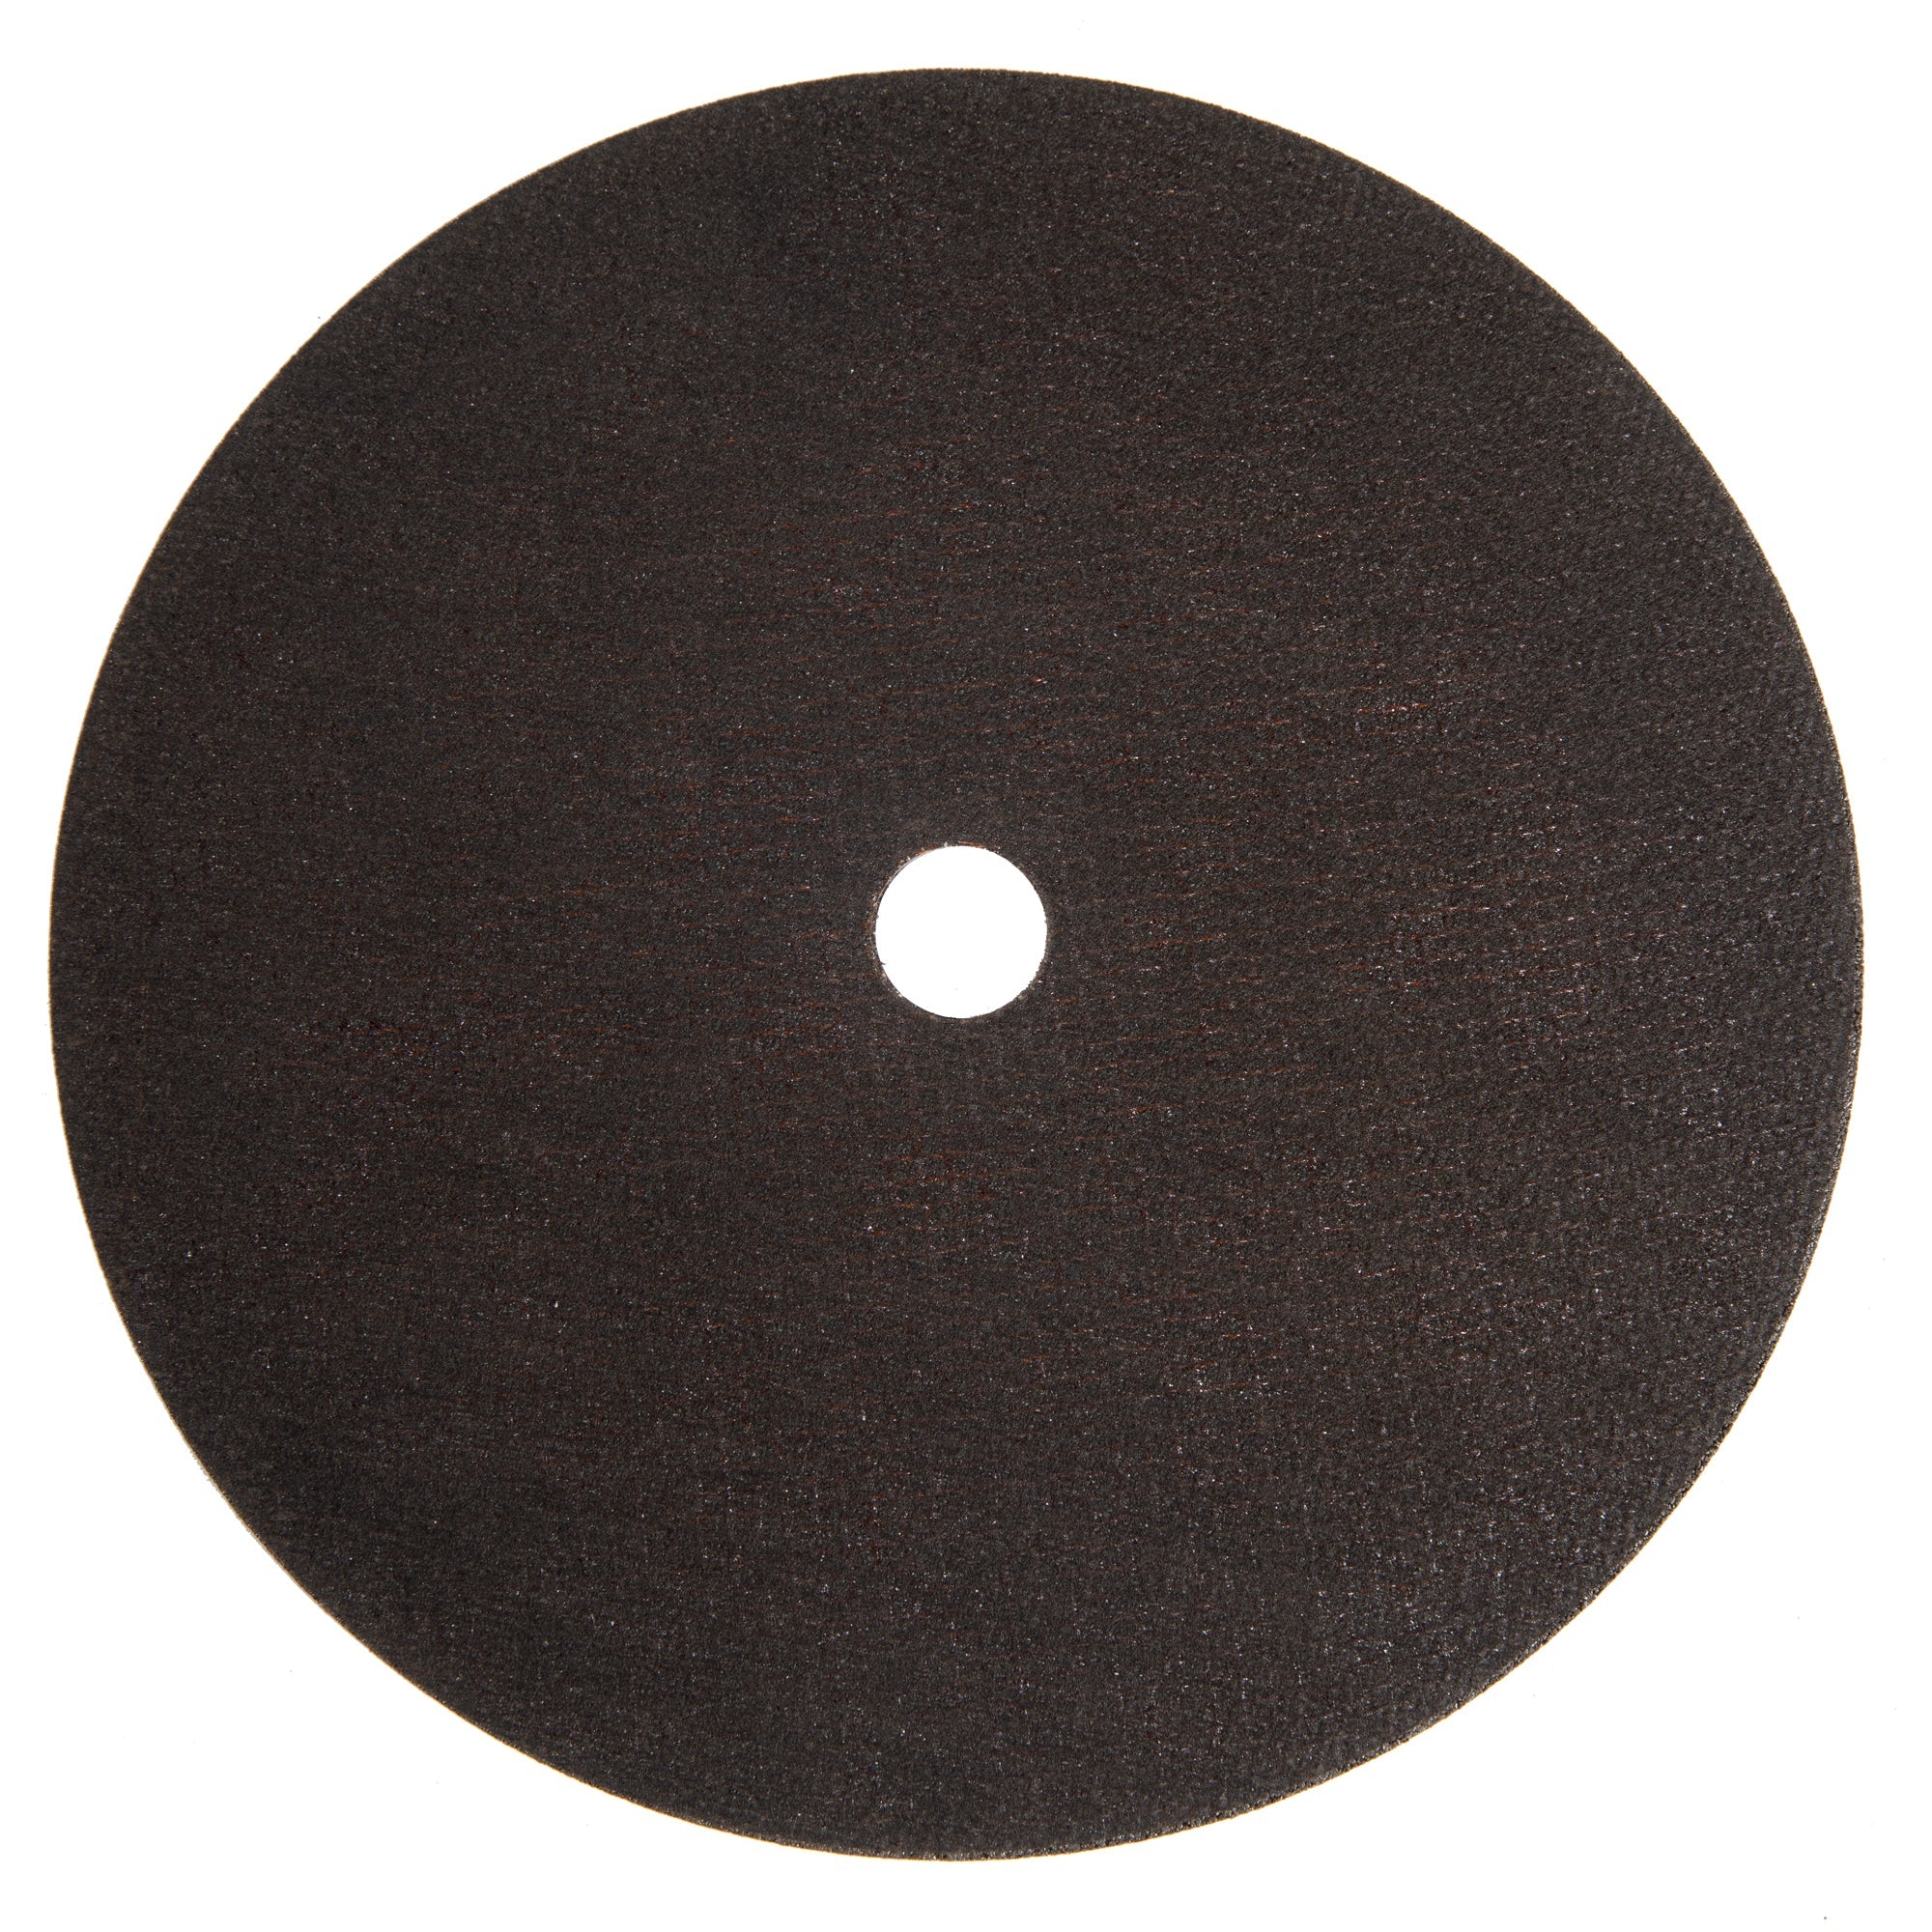 Комплект 10 бр. абразивен диск за метал с диаметър 230 MM DETOOLZ